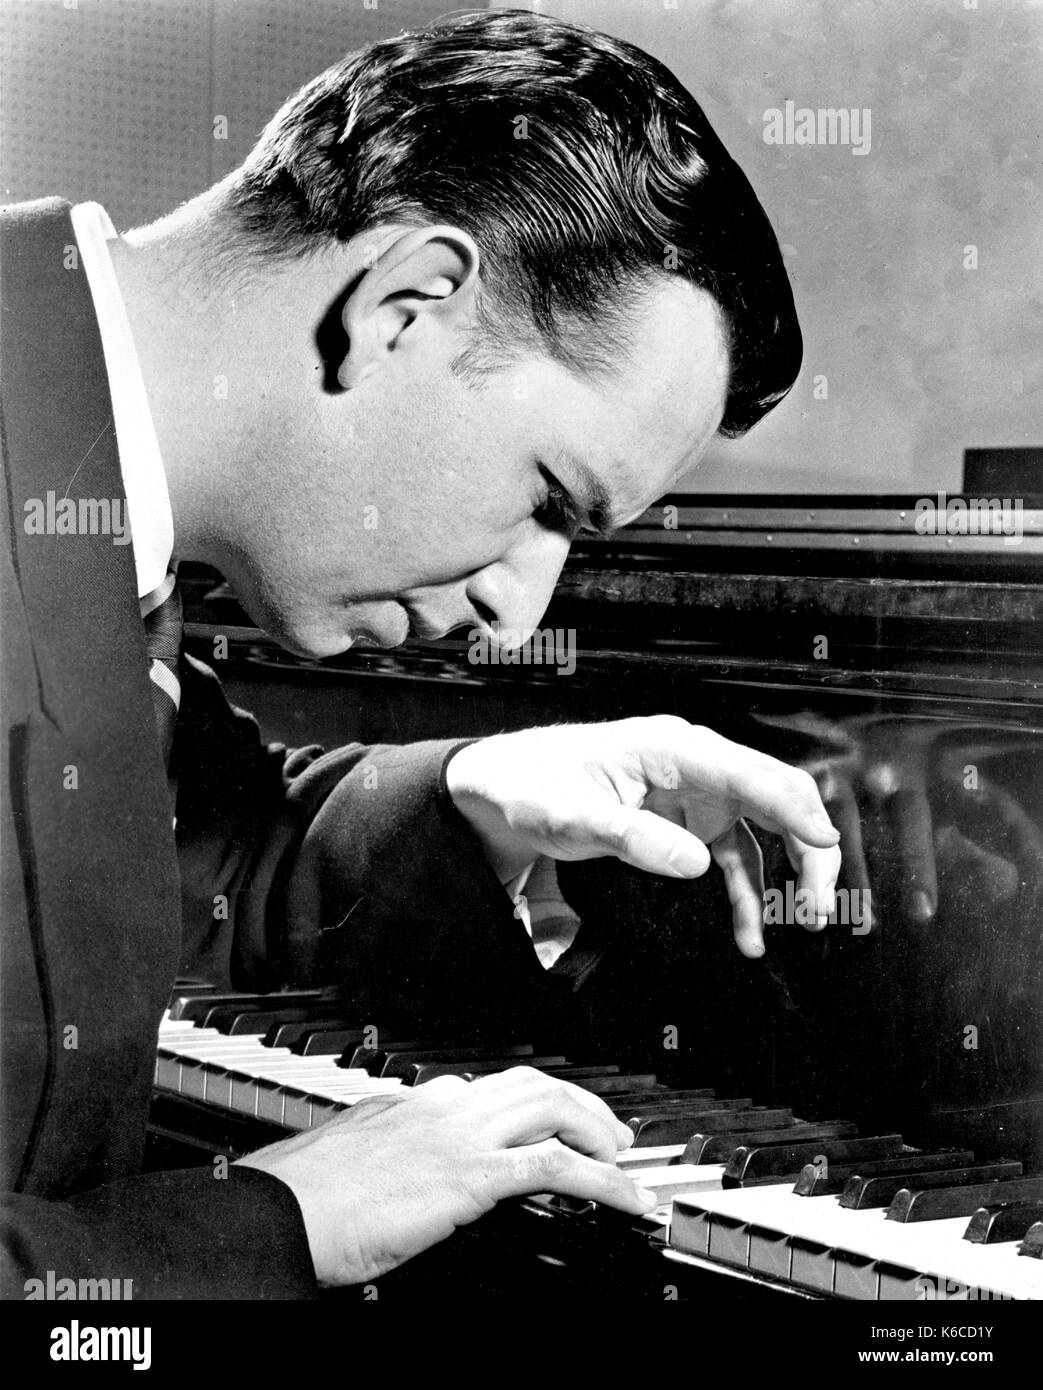 Grant JOHANESEN (1921-2005) Foto promocional del pianista estadounidense de concierto alrededor de 1955. Foto: Olaf Ranum Foto de stock